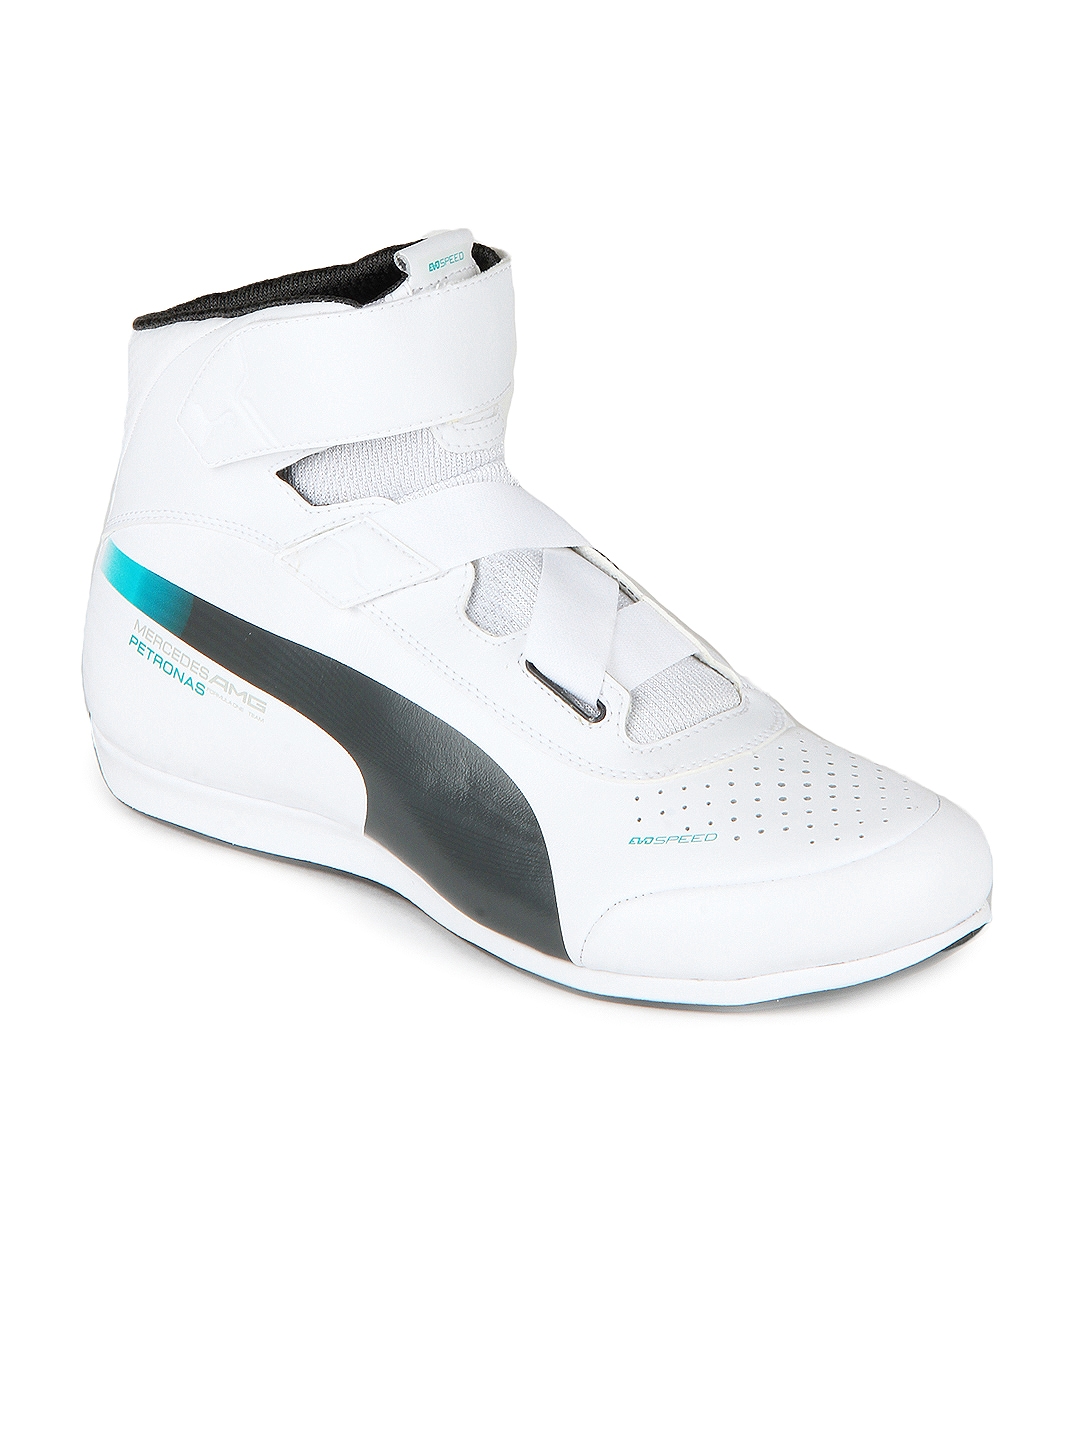 Puede ser ignorado arrojar polvo en los ojos tomar el pelo Buy PUMA Motorsport Men White Evospeed 1.2 Mid Mamgp Sports Shoes - Sports  Shoes for Men 162168 | Myntra